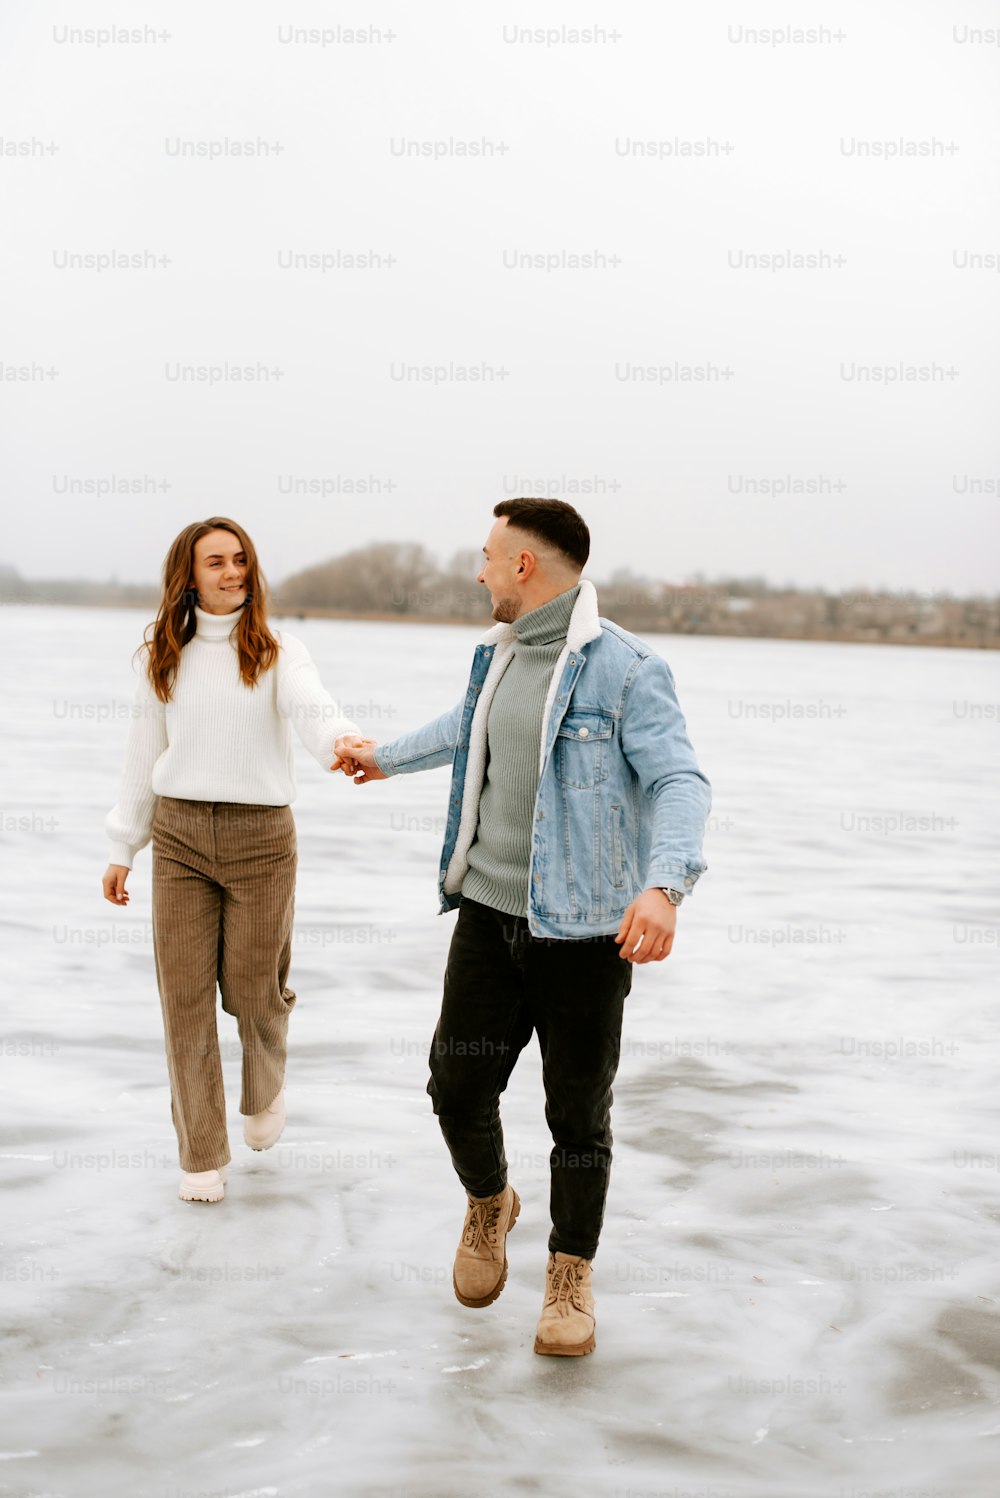 Un uomo e una donna camminano nell'acqua